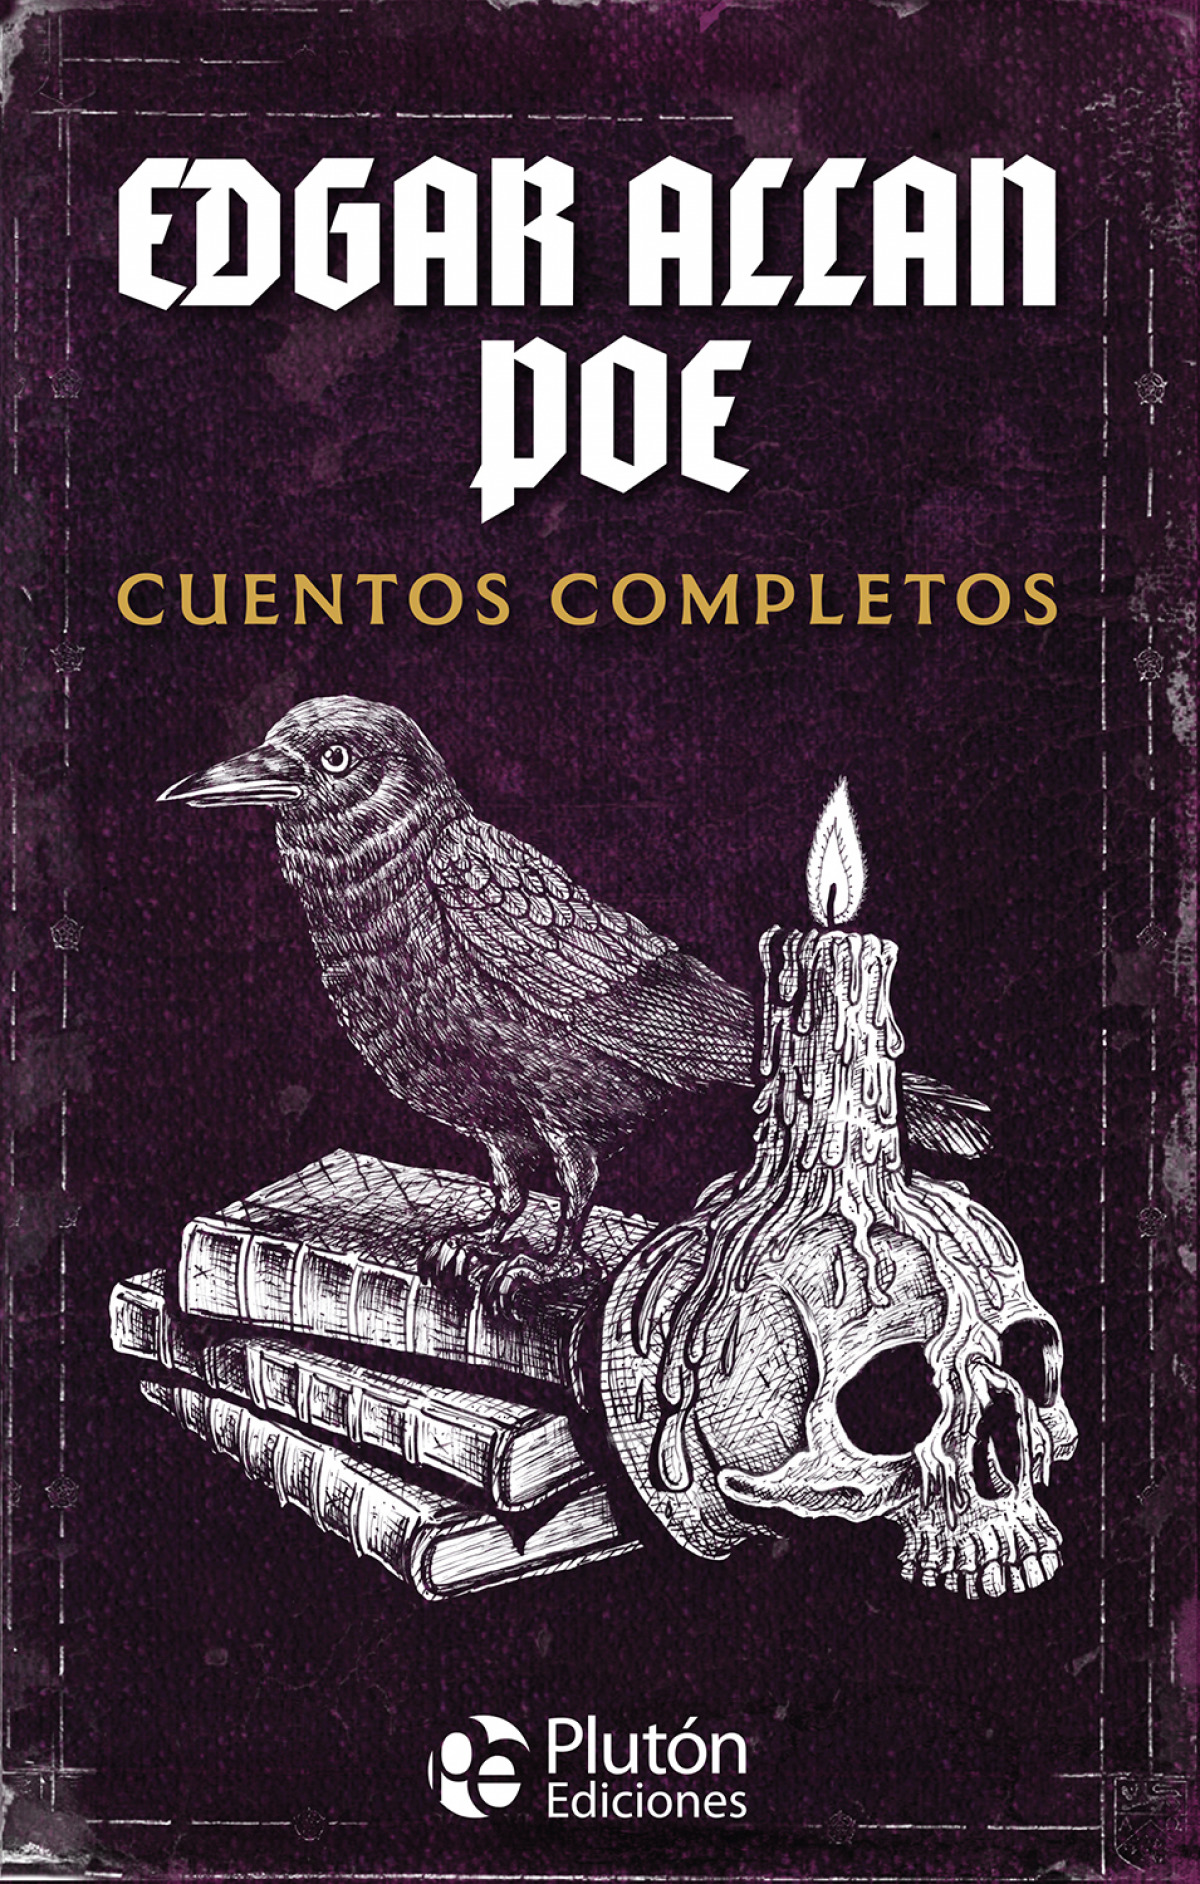 Edgar Allan Poe: Cuentos Completos - Poe, Edgar Allan